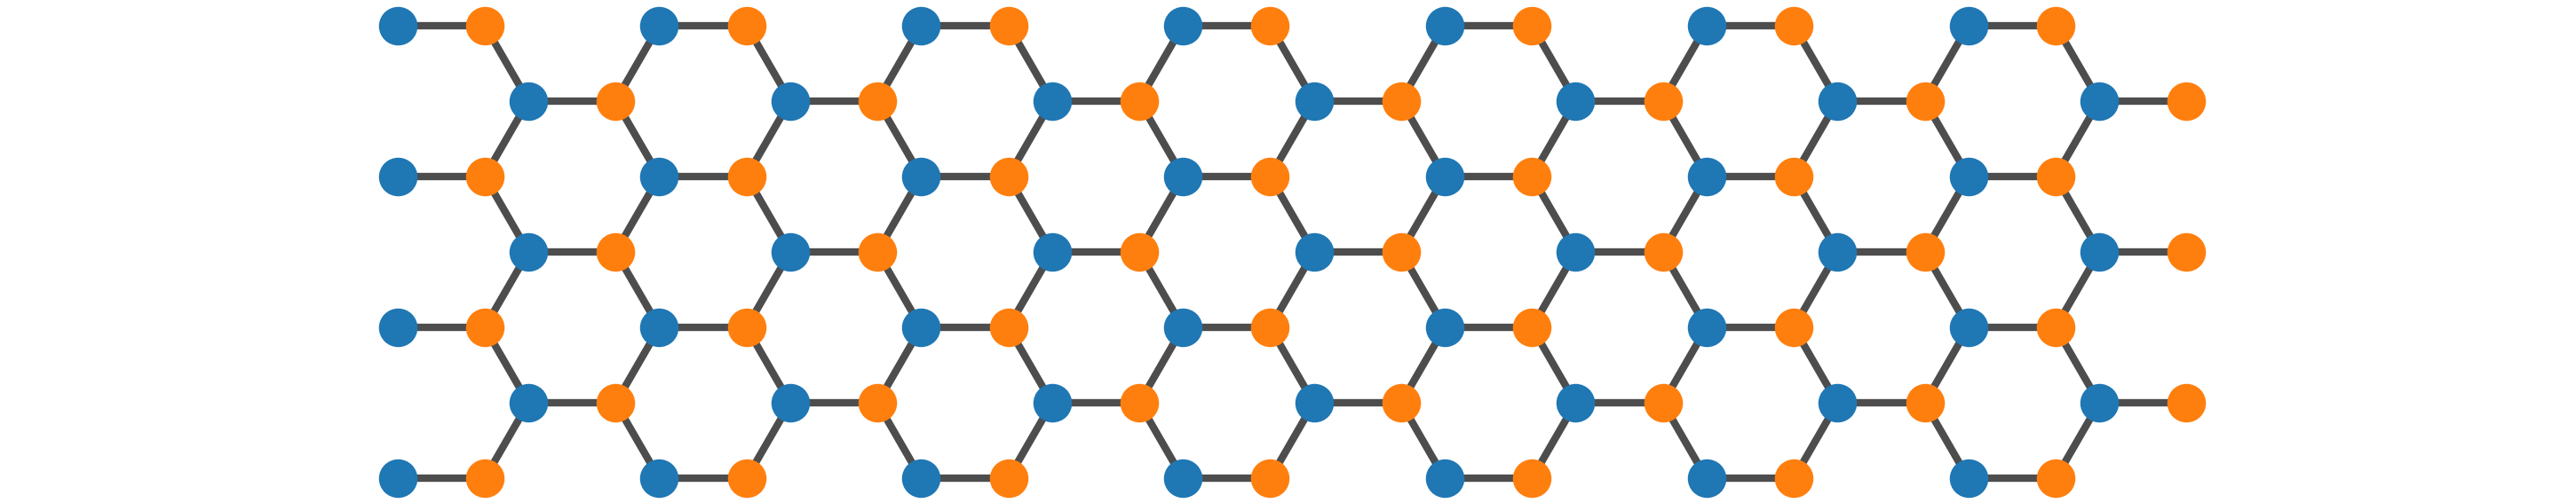 Graphene lattice